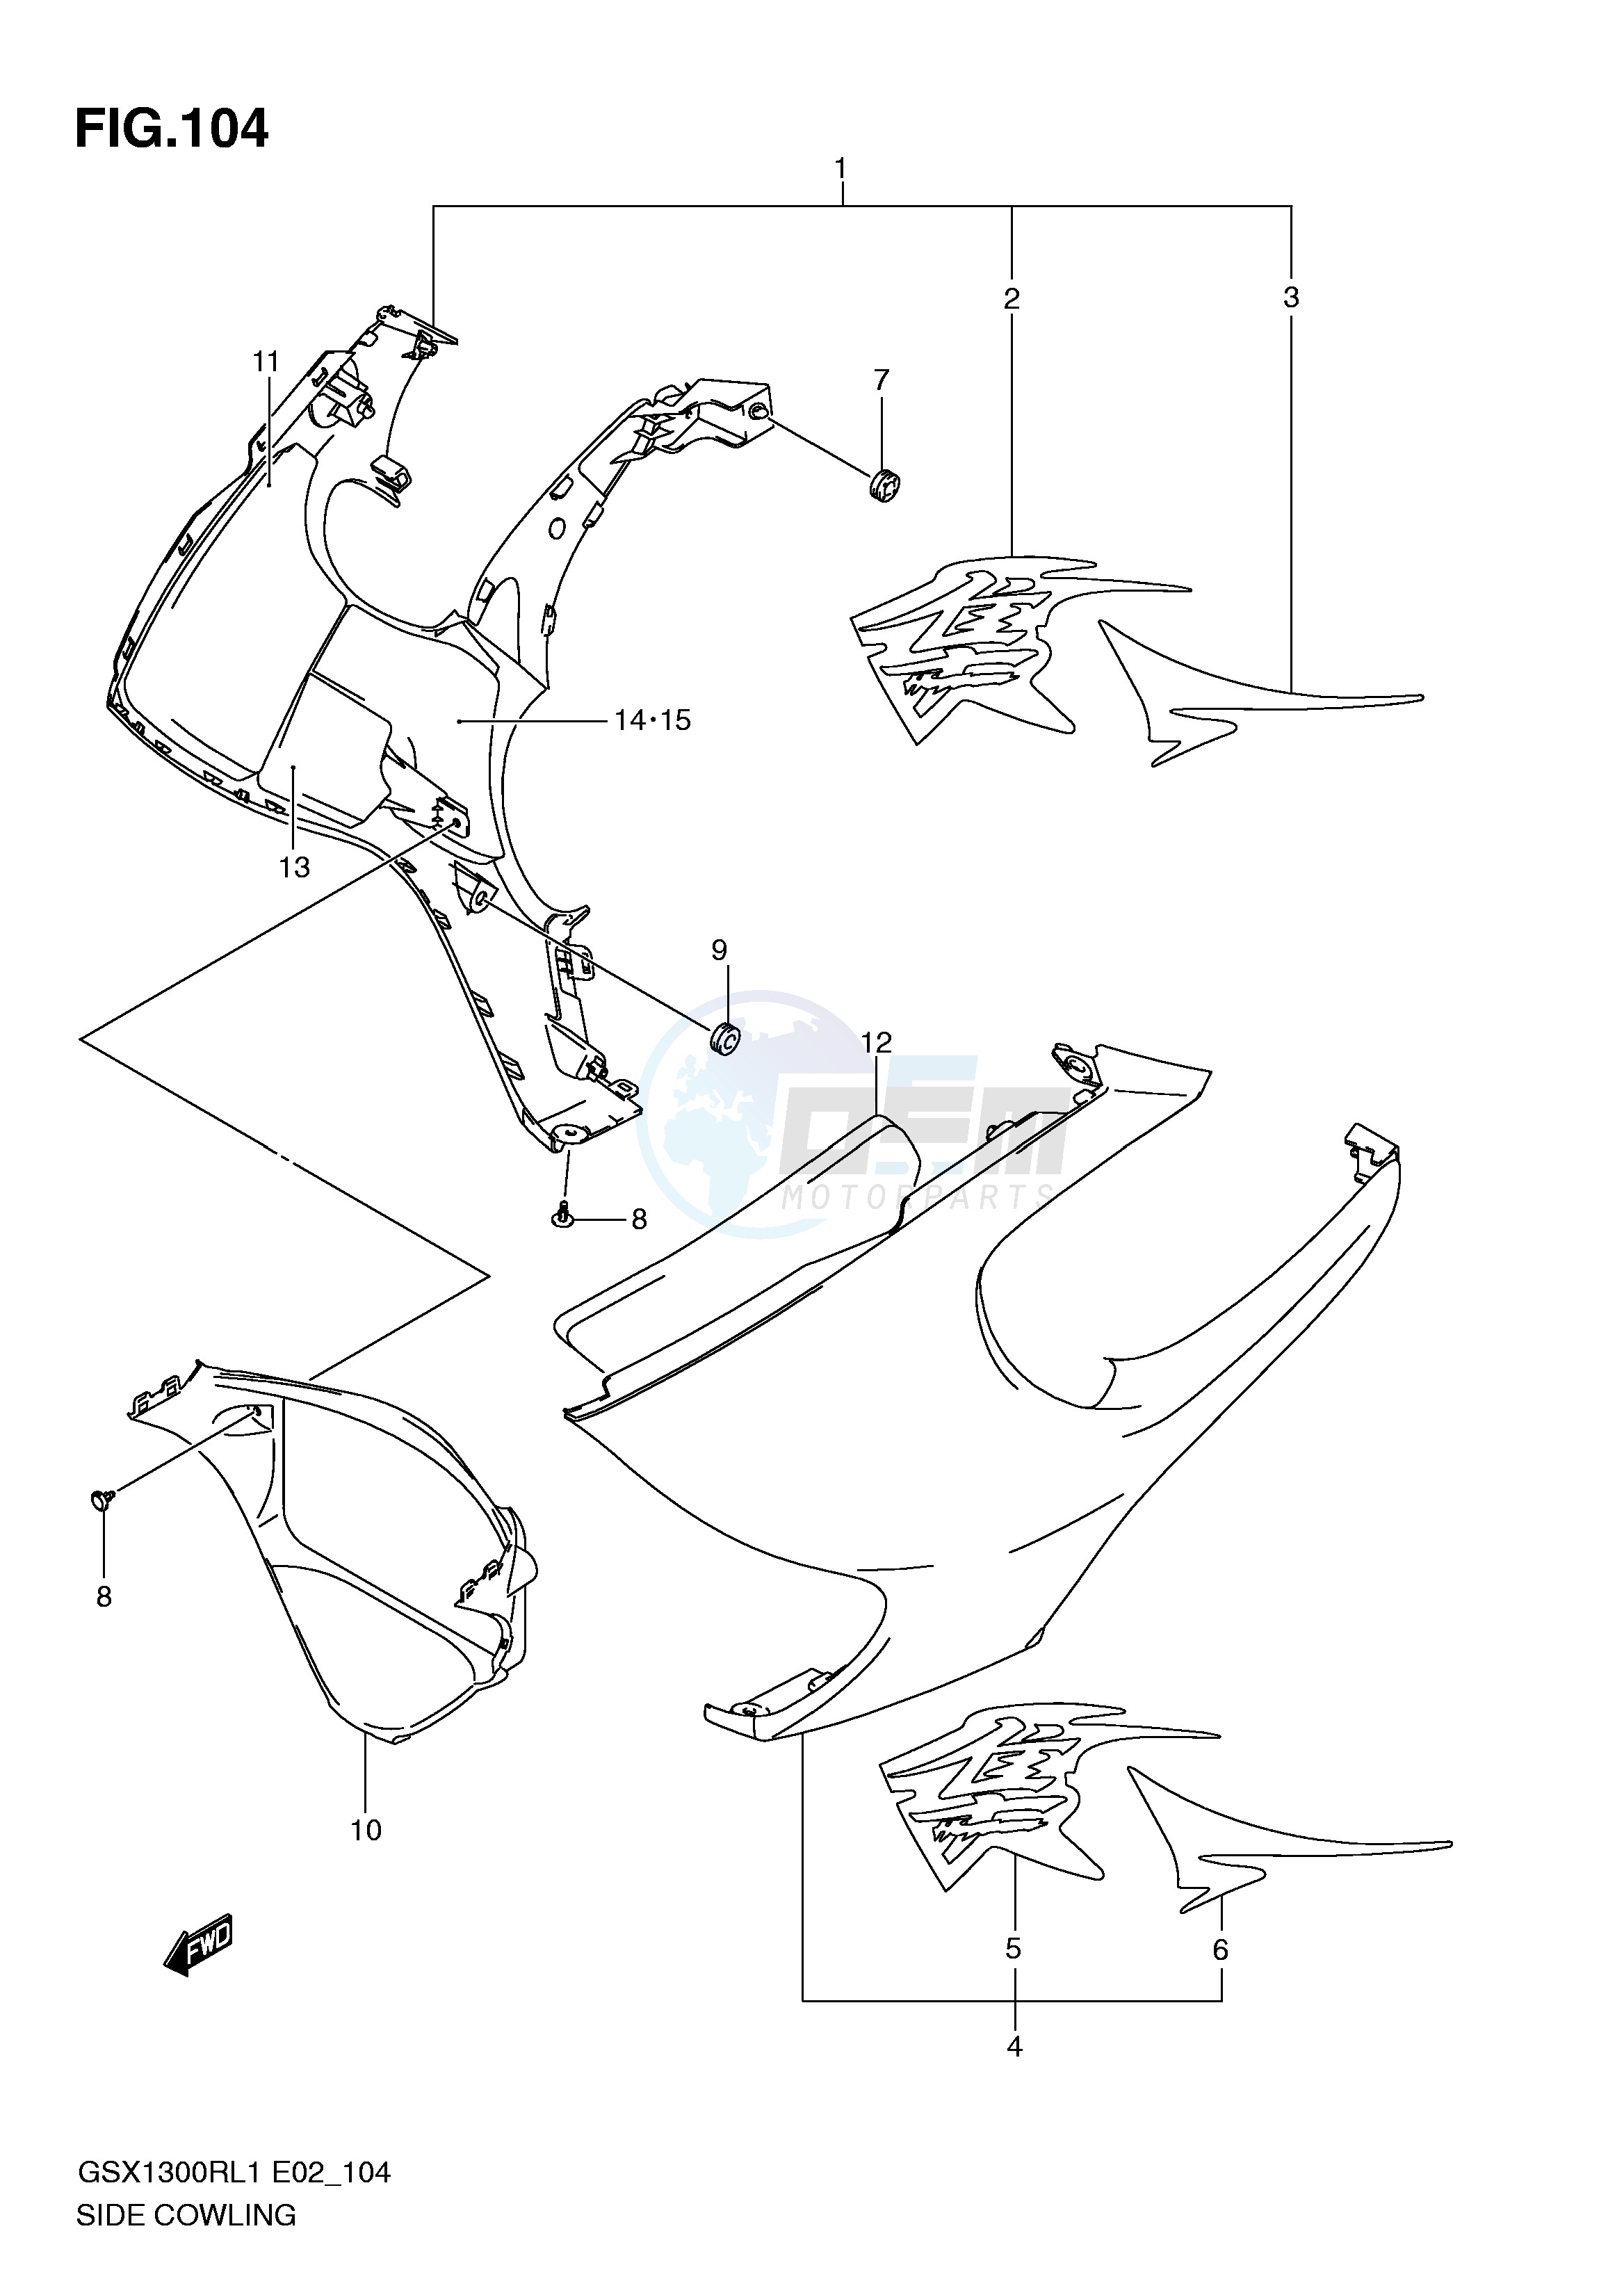 SIDE COWLING (GSX1300RUFL1 E19) blueprint